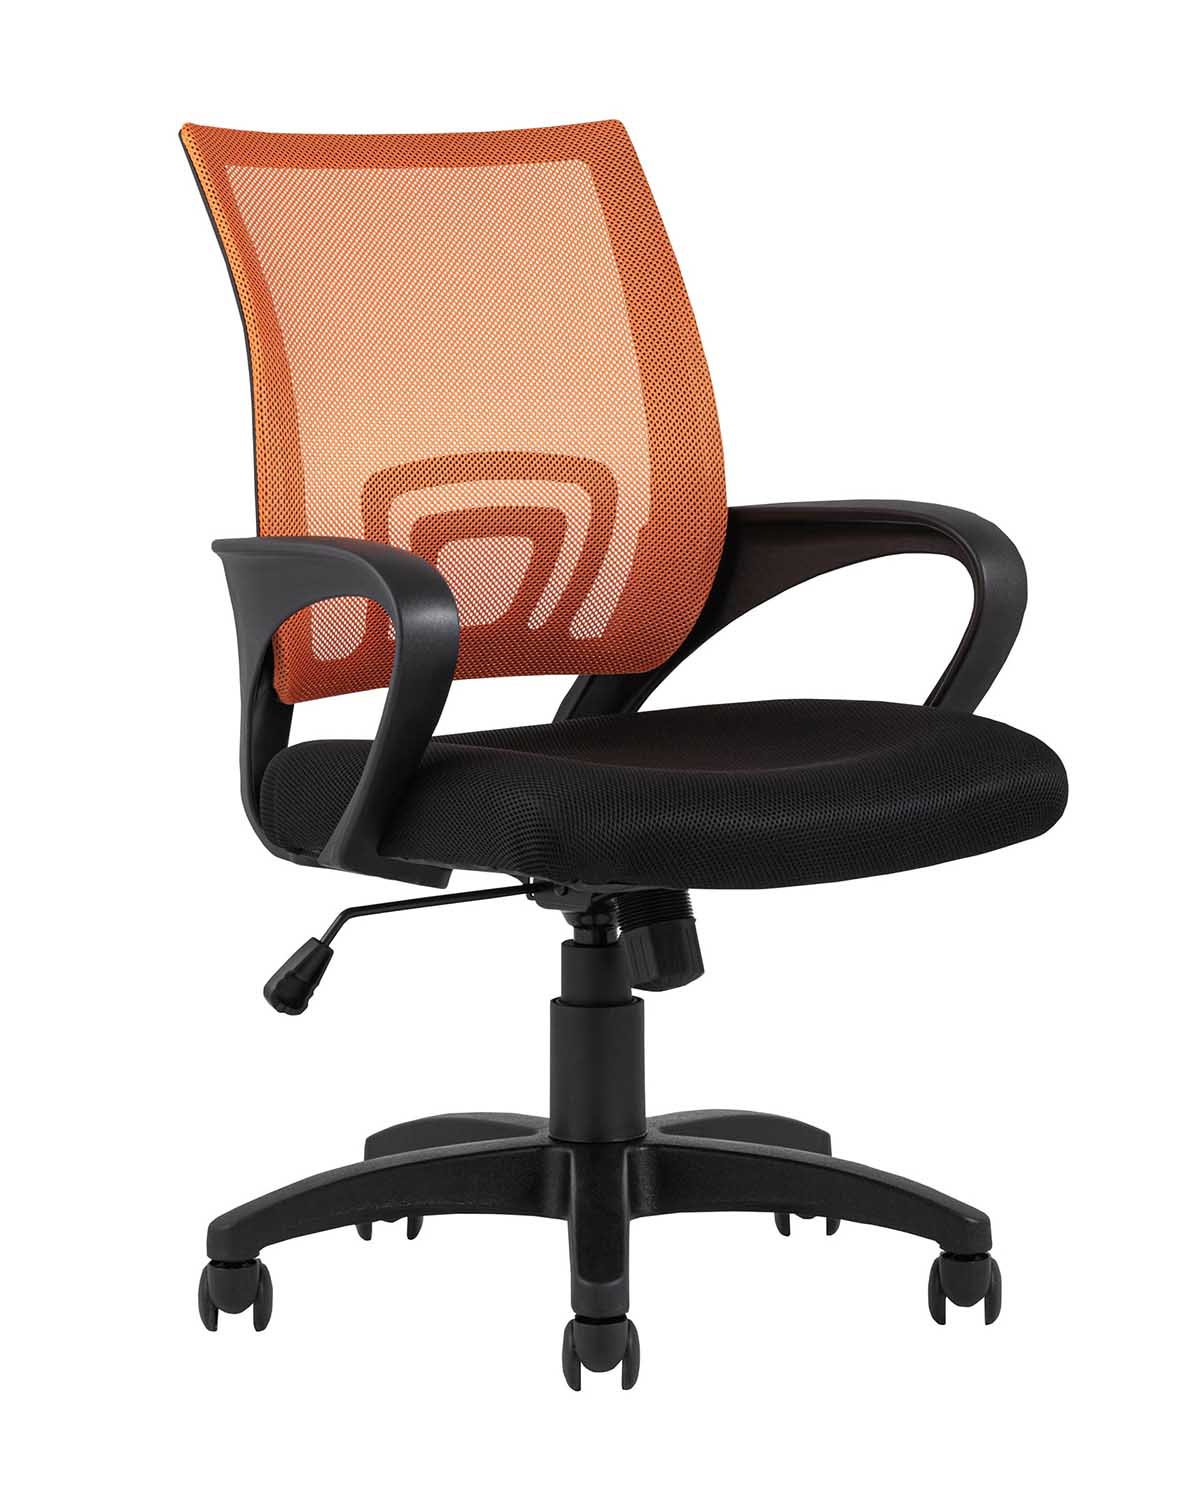 Компьютерное кресло TopChairs Simple офисное оранжевое в обивке из текстиля с сеткой, механизм качания Top Gun